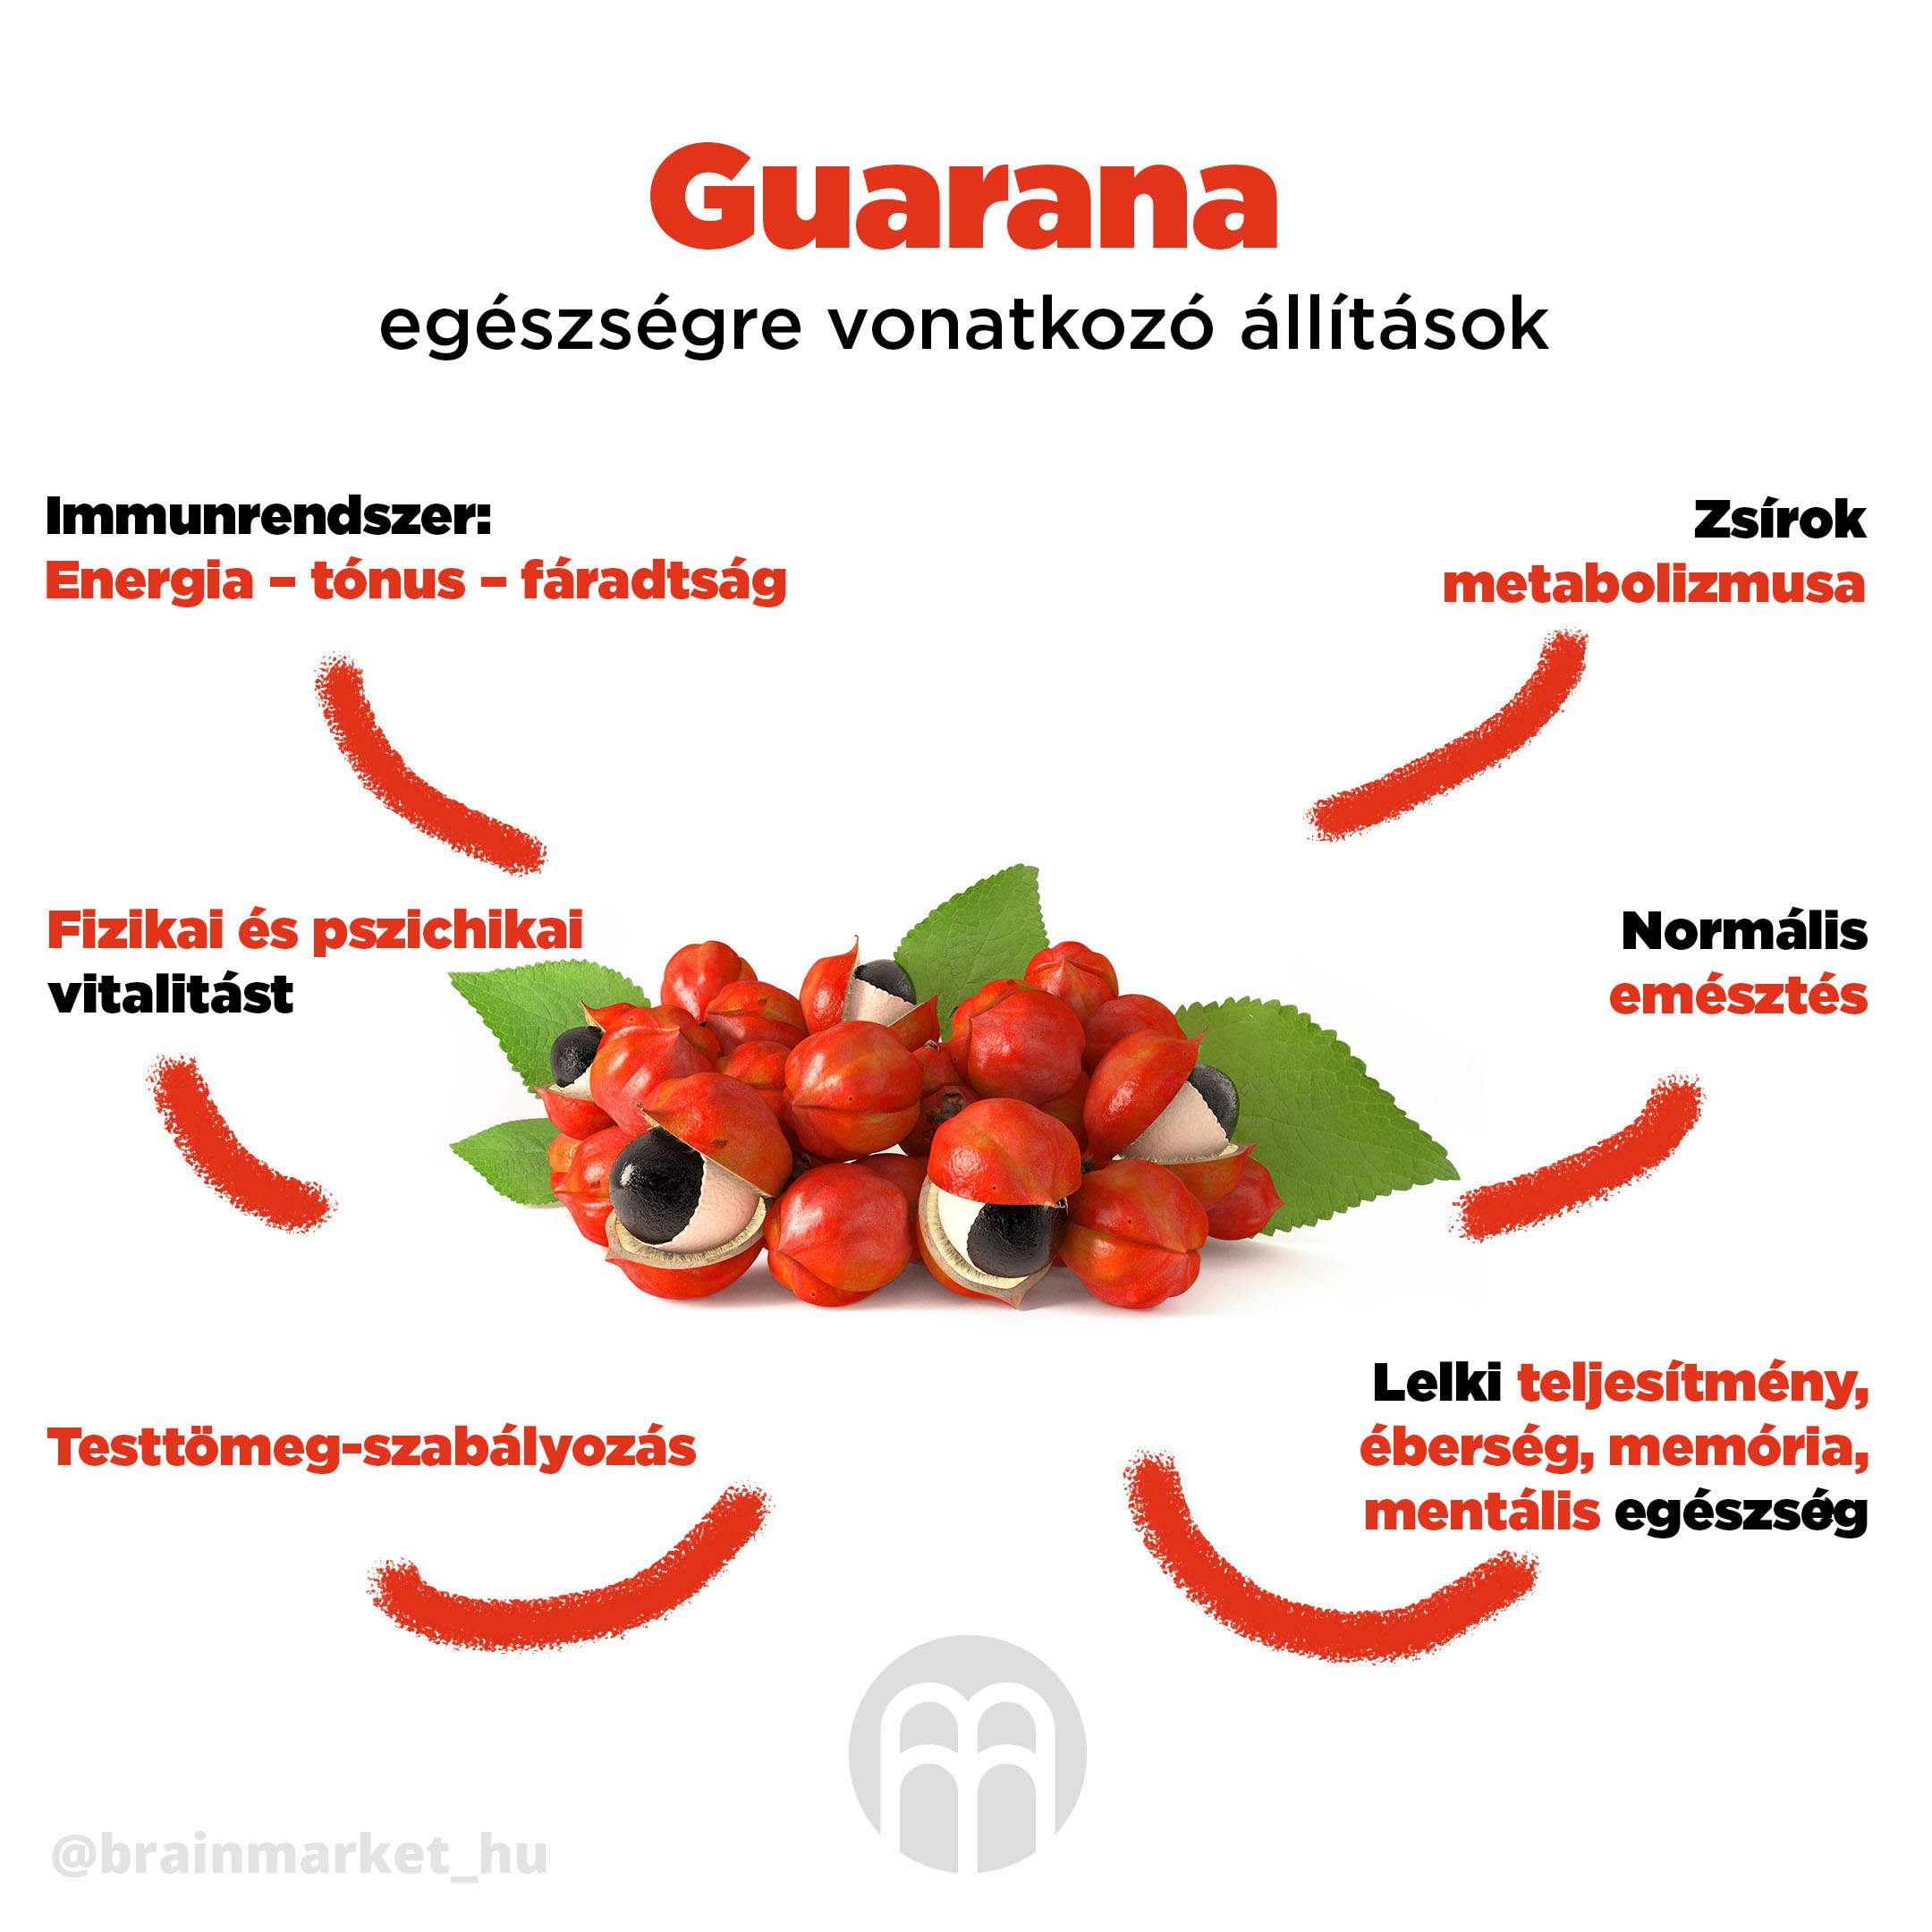 Guarana jóváhagyta az egészségre vonatkozó állításokat